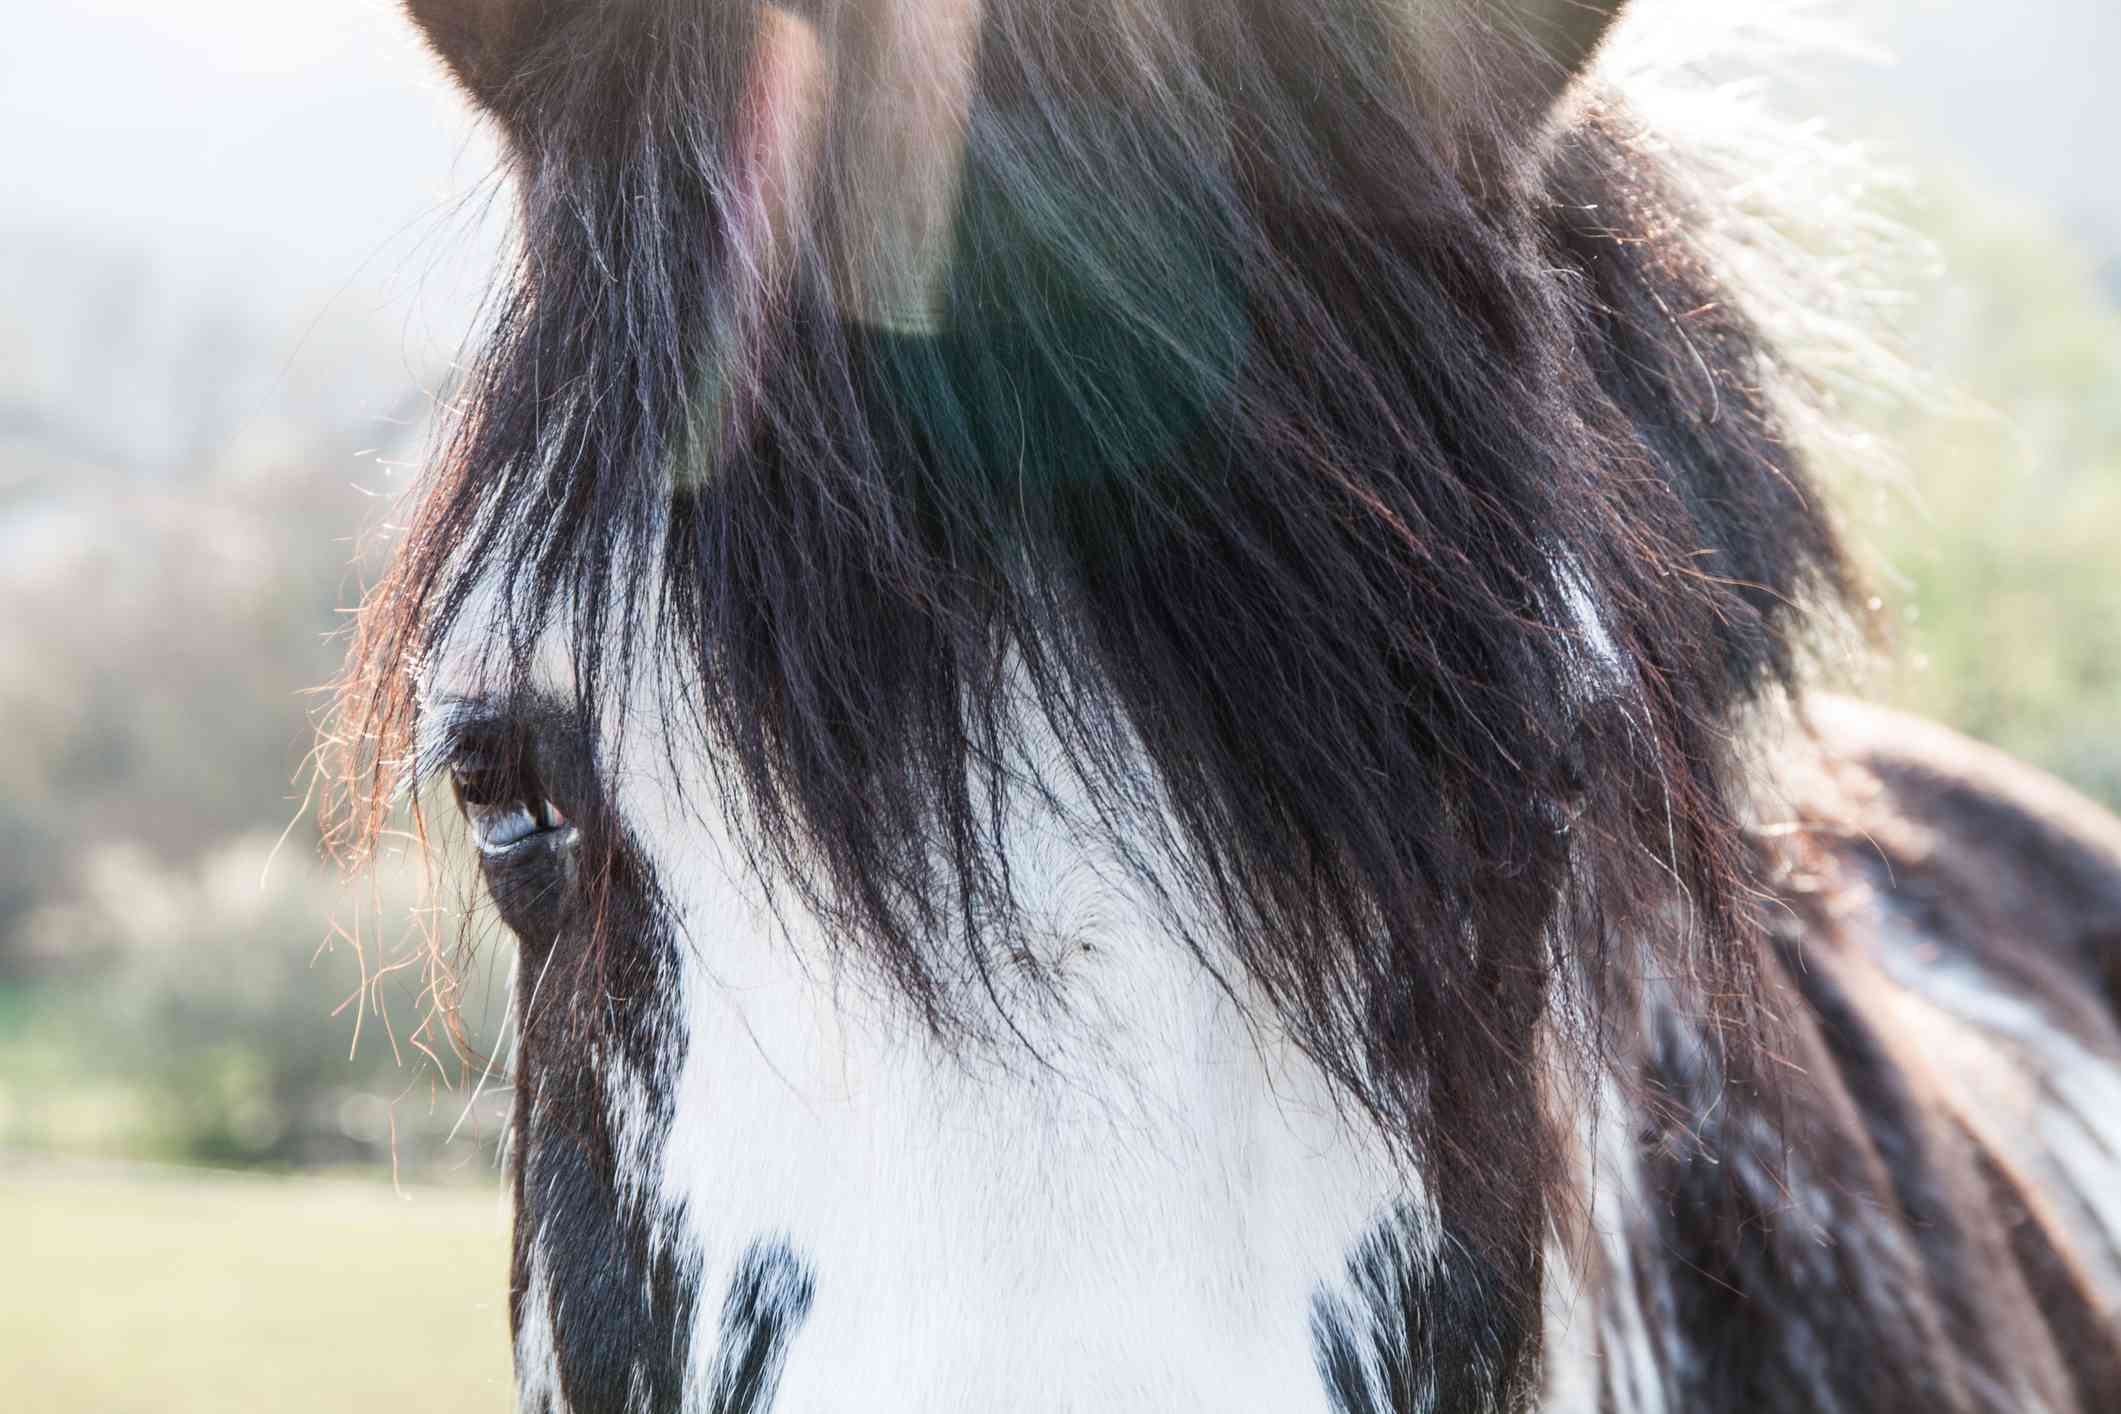 Voorbeeld van chromatische aberraties in paardenhaar